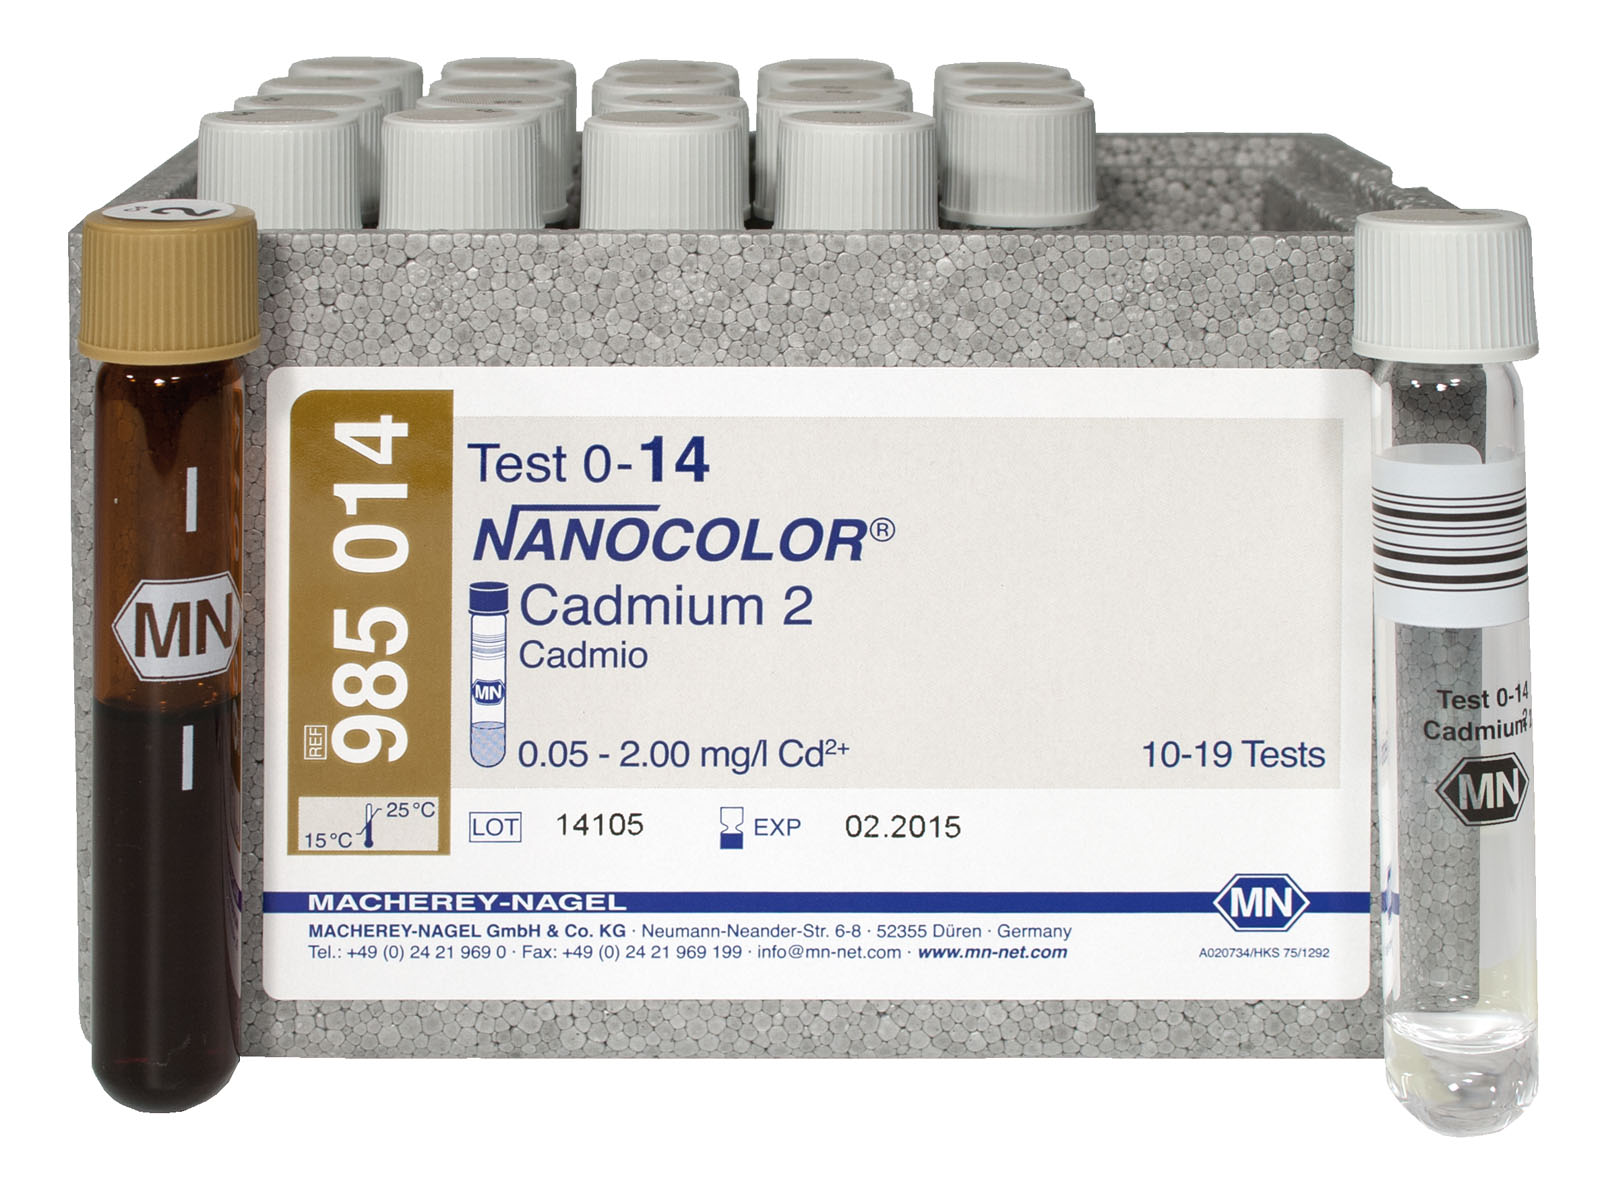 RUK NANOCOLOR- Cadmium 2 Test